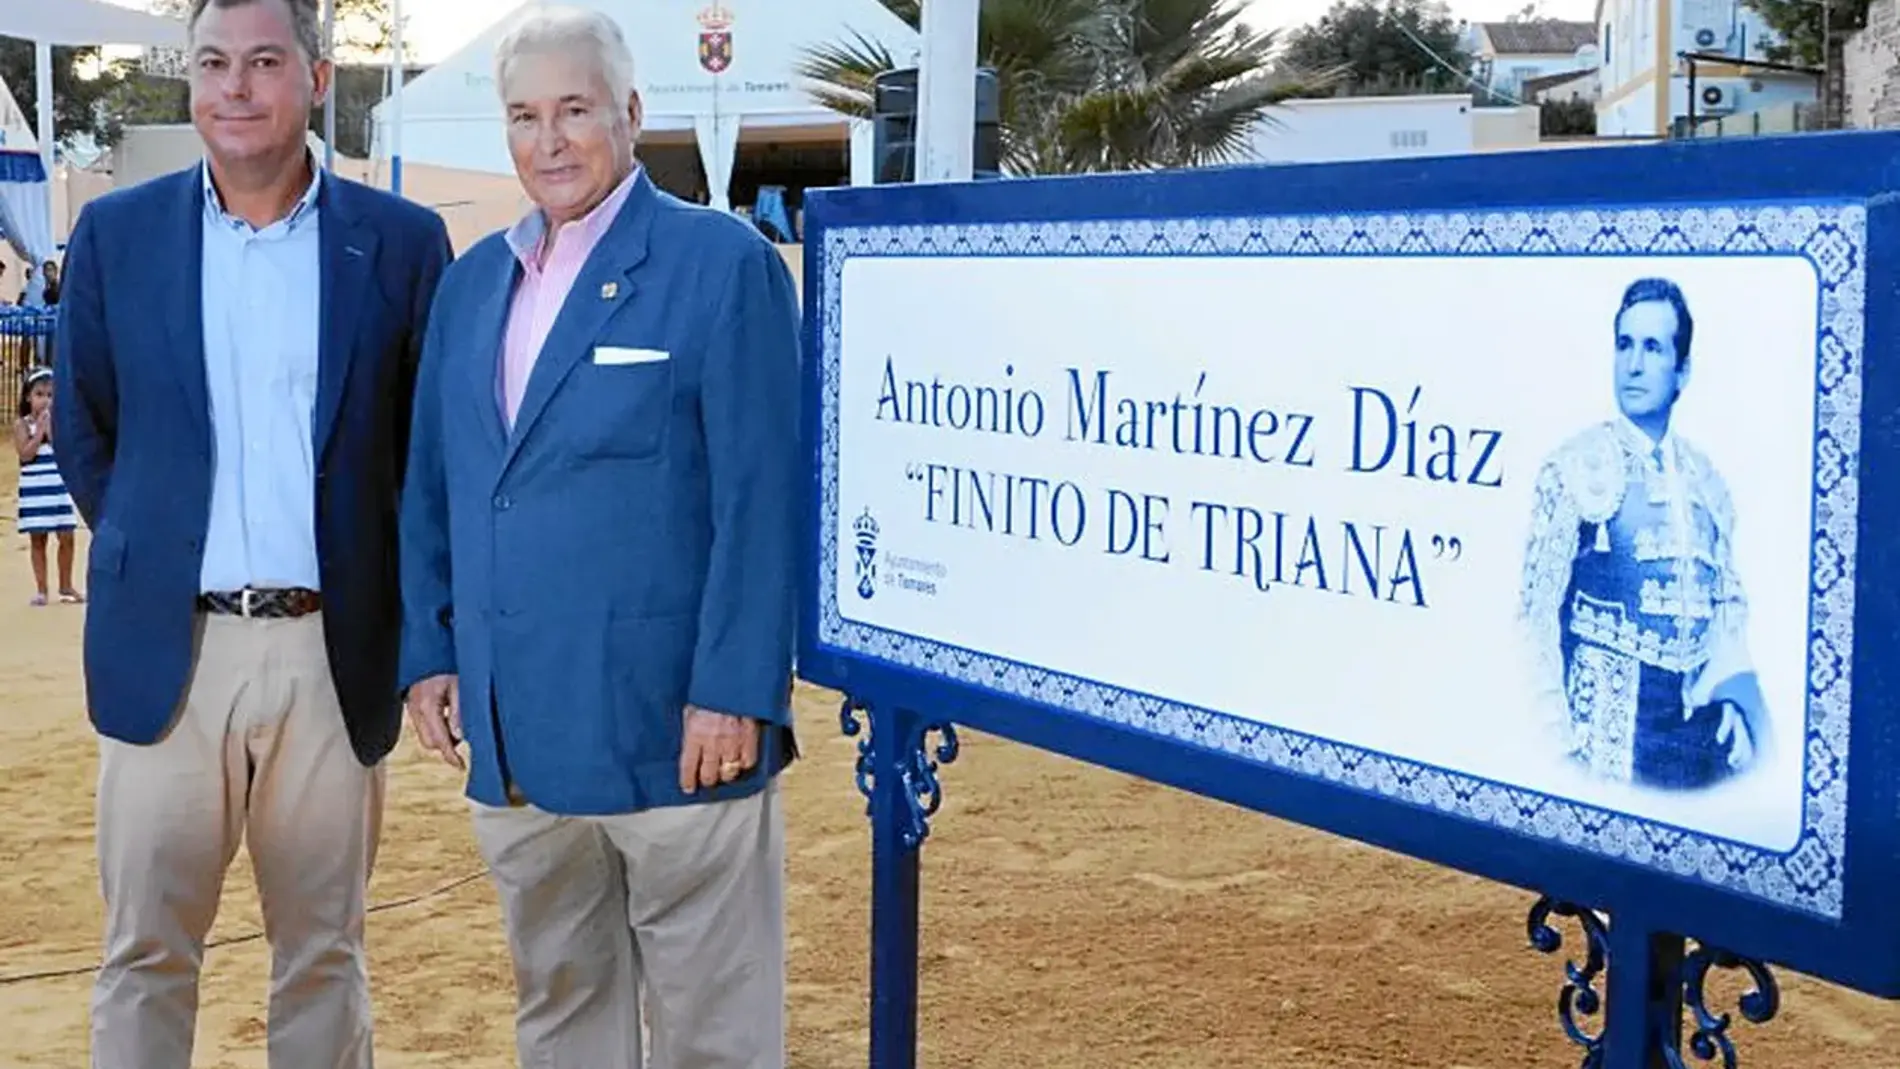 El alcalde de Tomares, José Luis Sanz, y Antonio Martínez, "Finito de Triana", junto a su calle en el recinto ferial de la localidad sevillana